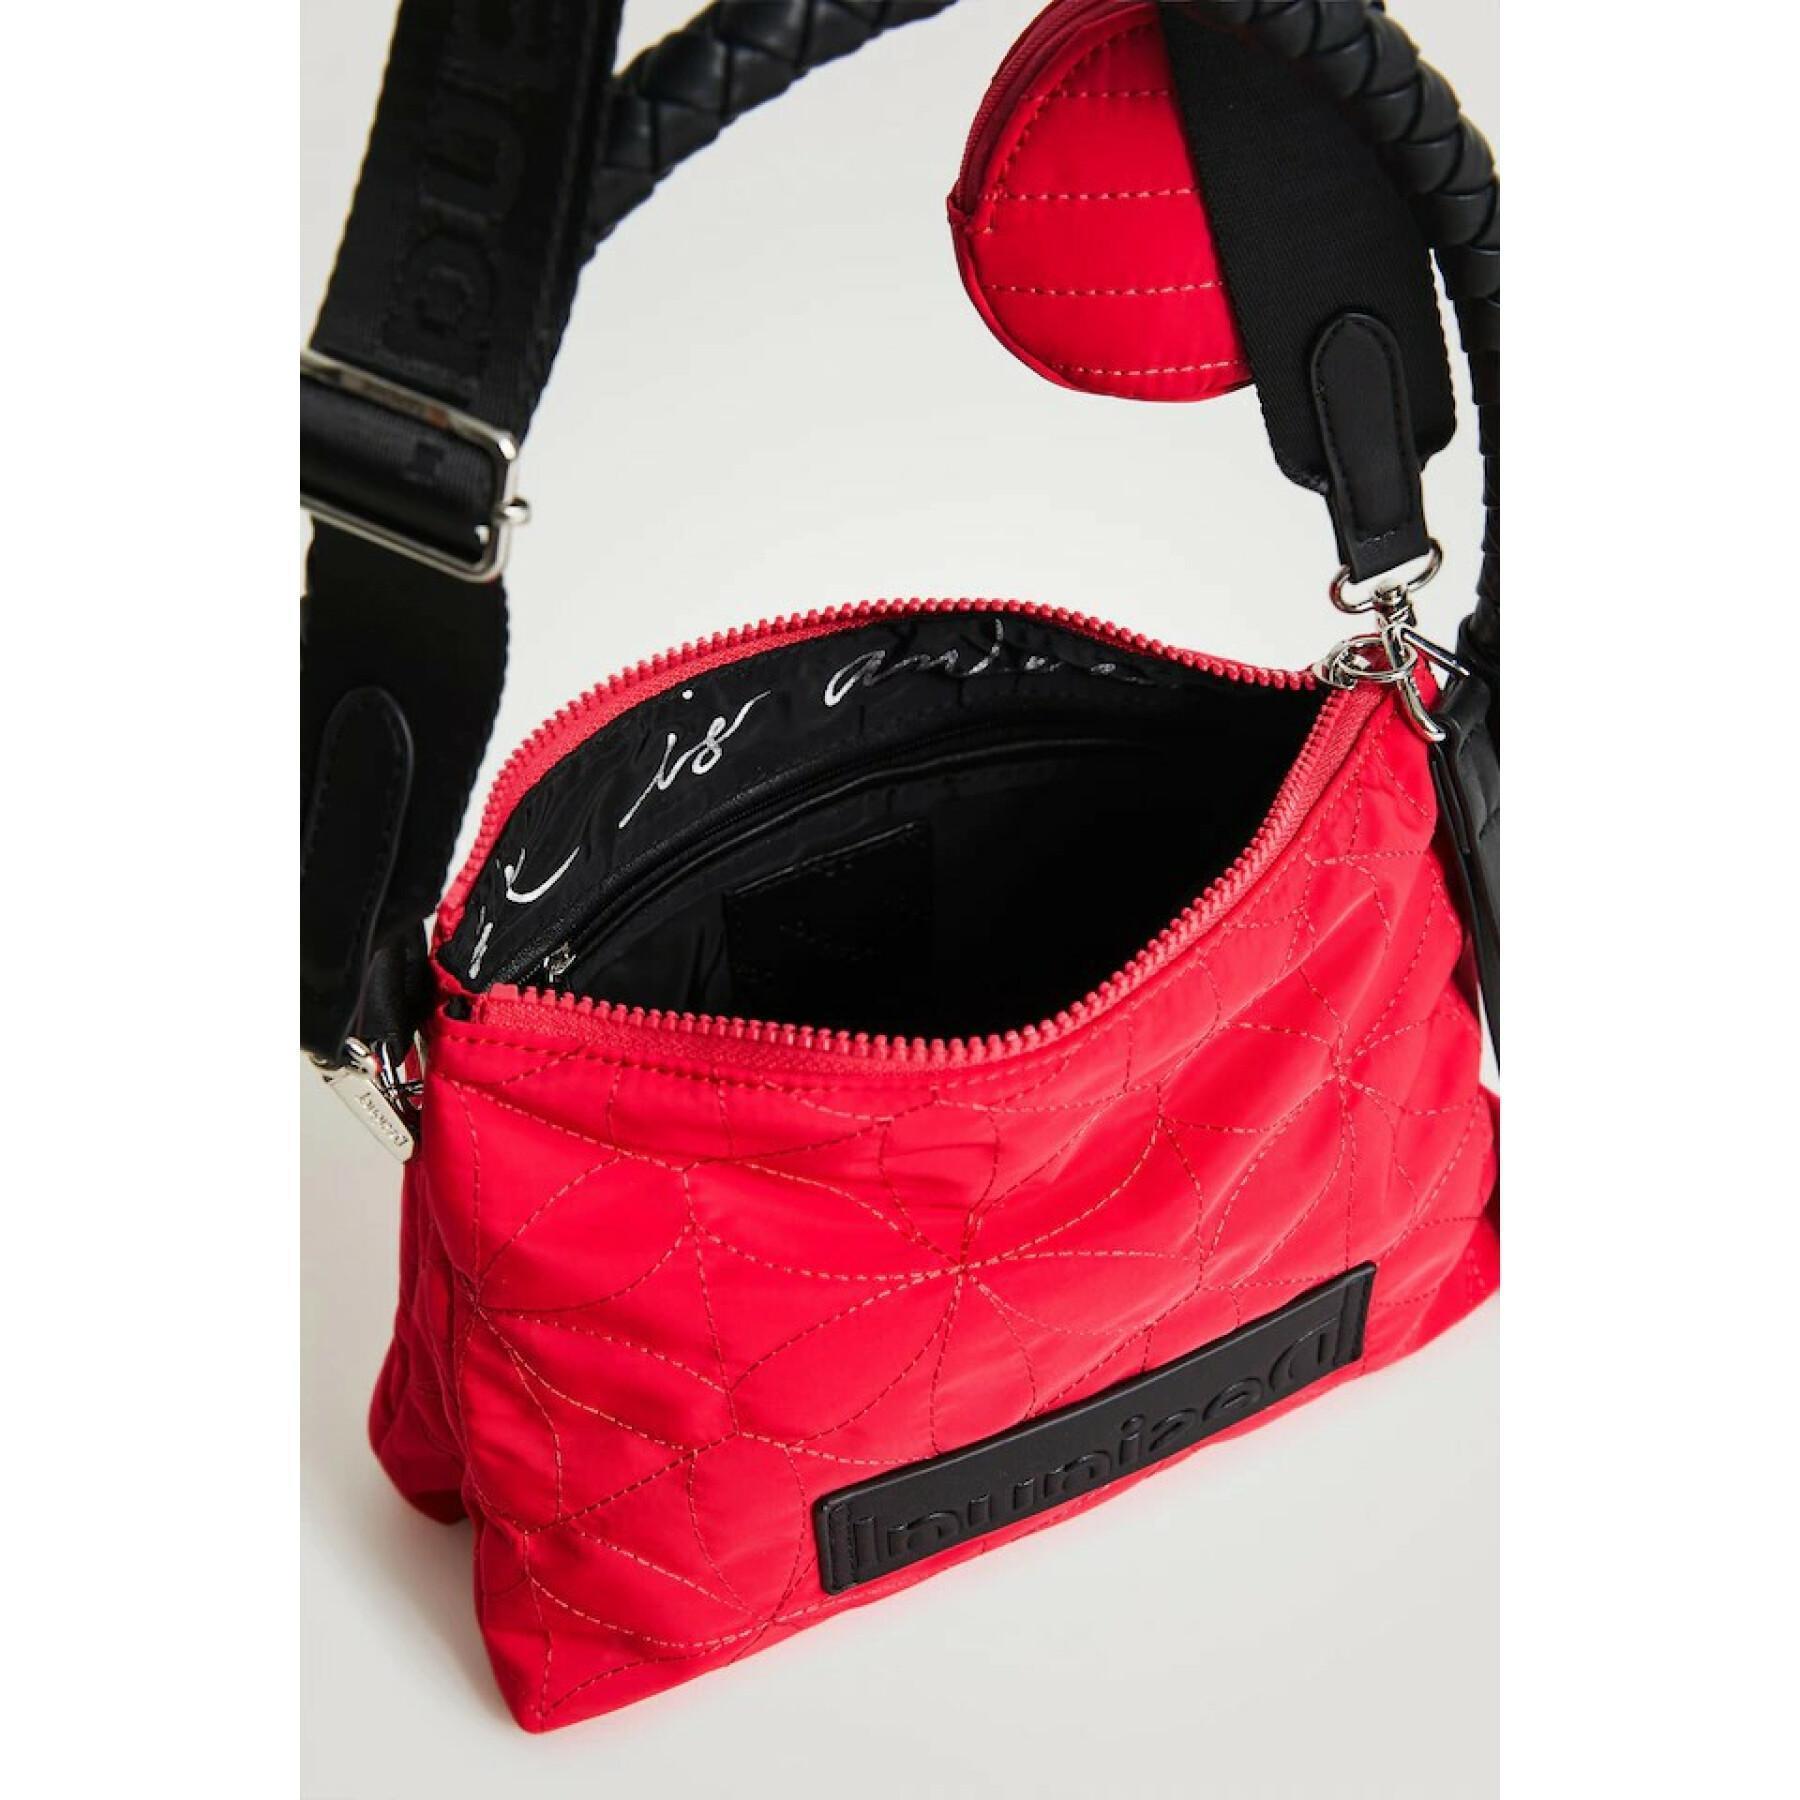 Shoulder bag for women Desigual Prisma Dortmund